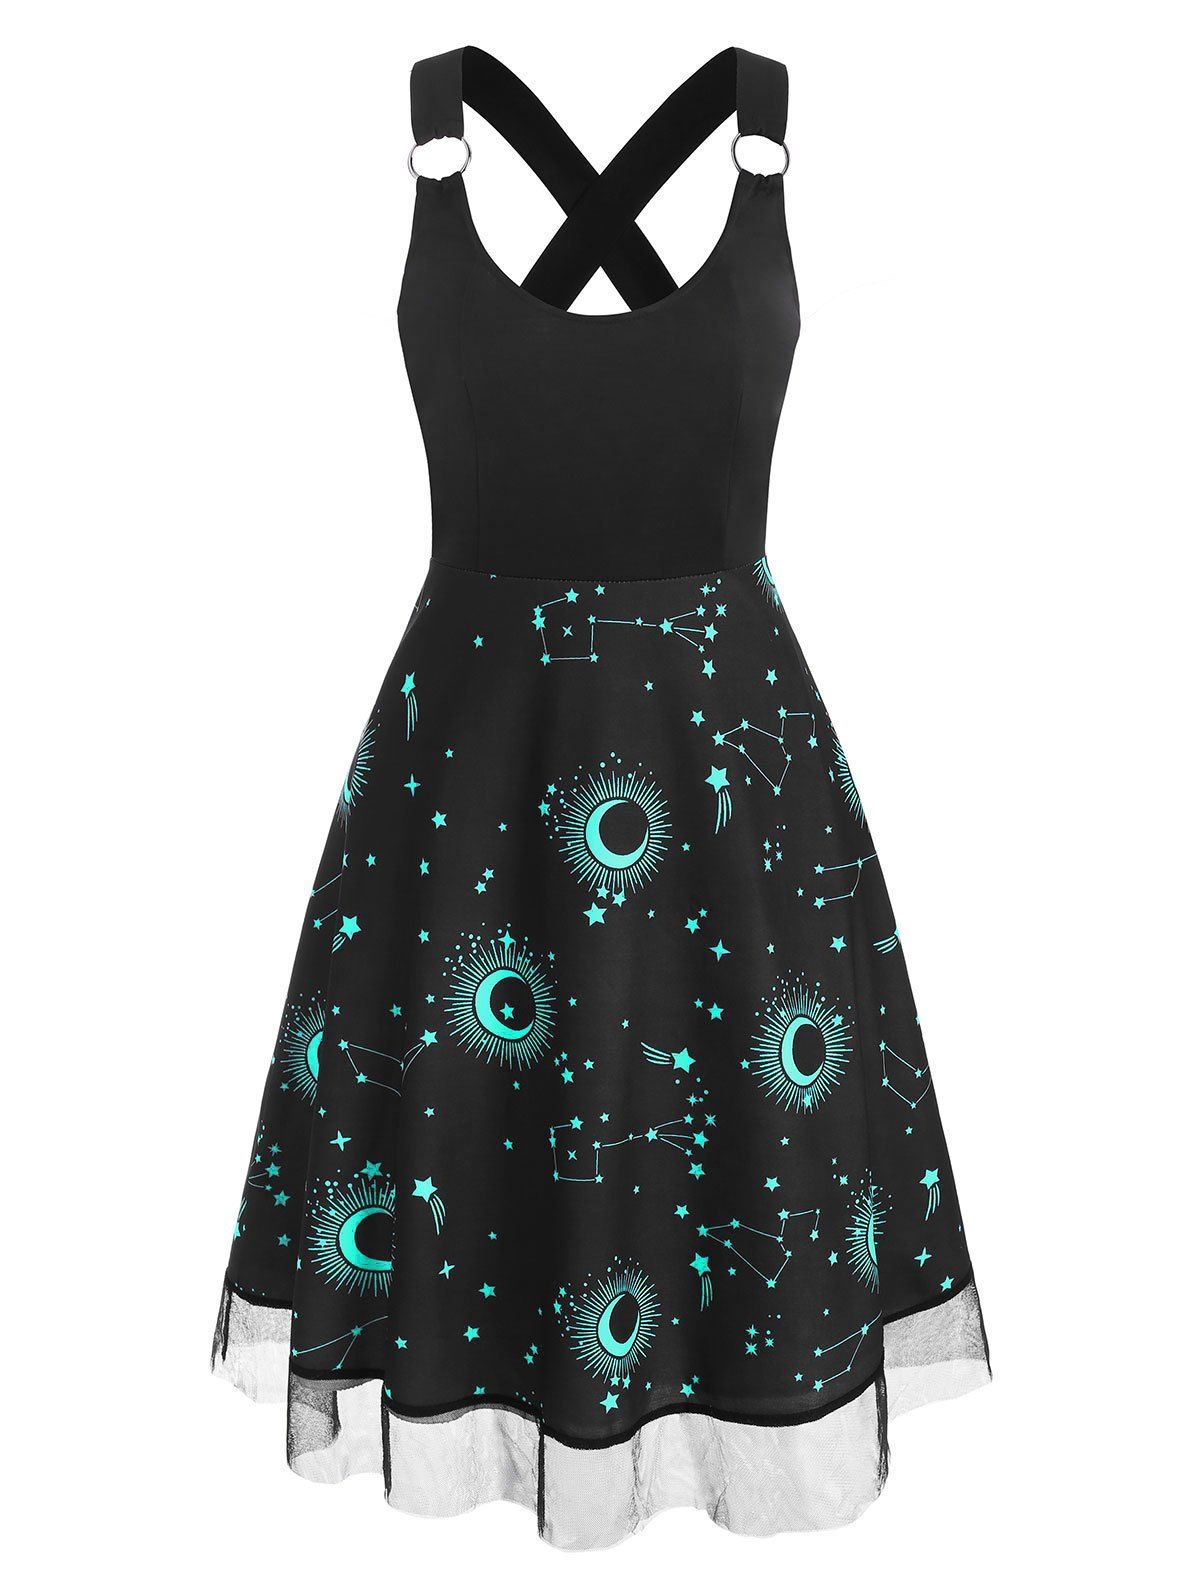 Sun Moon Star Print Lace Insert Criss Cross Dress - BLACK XL